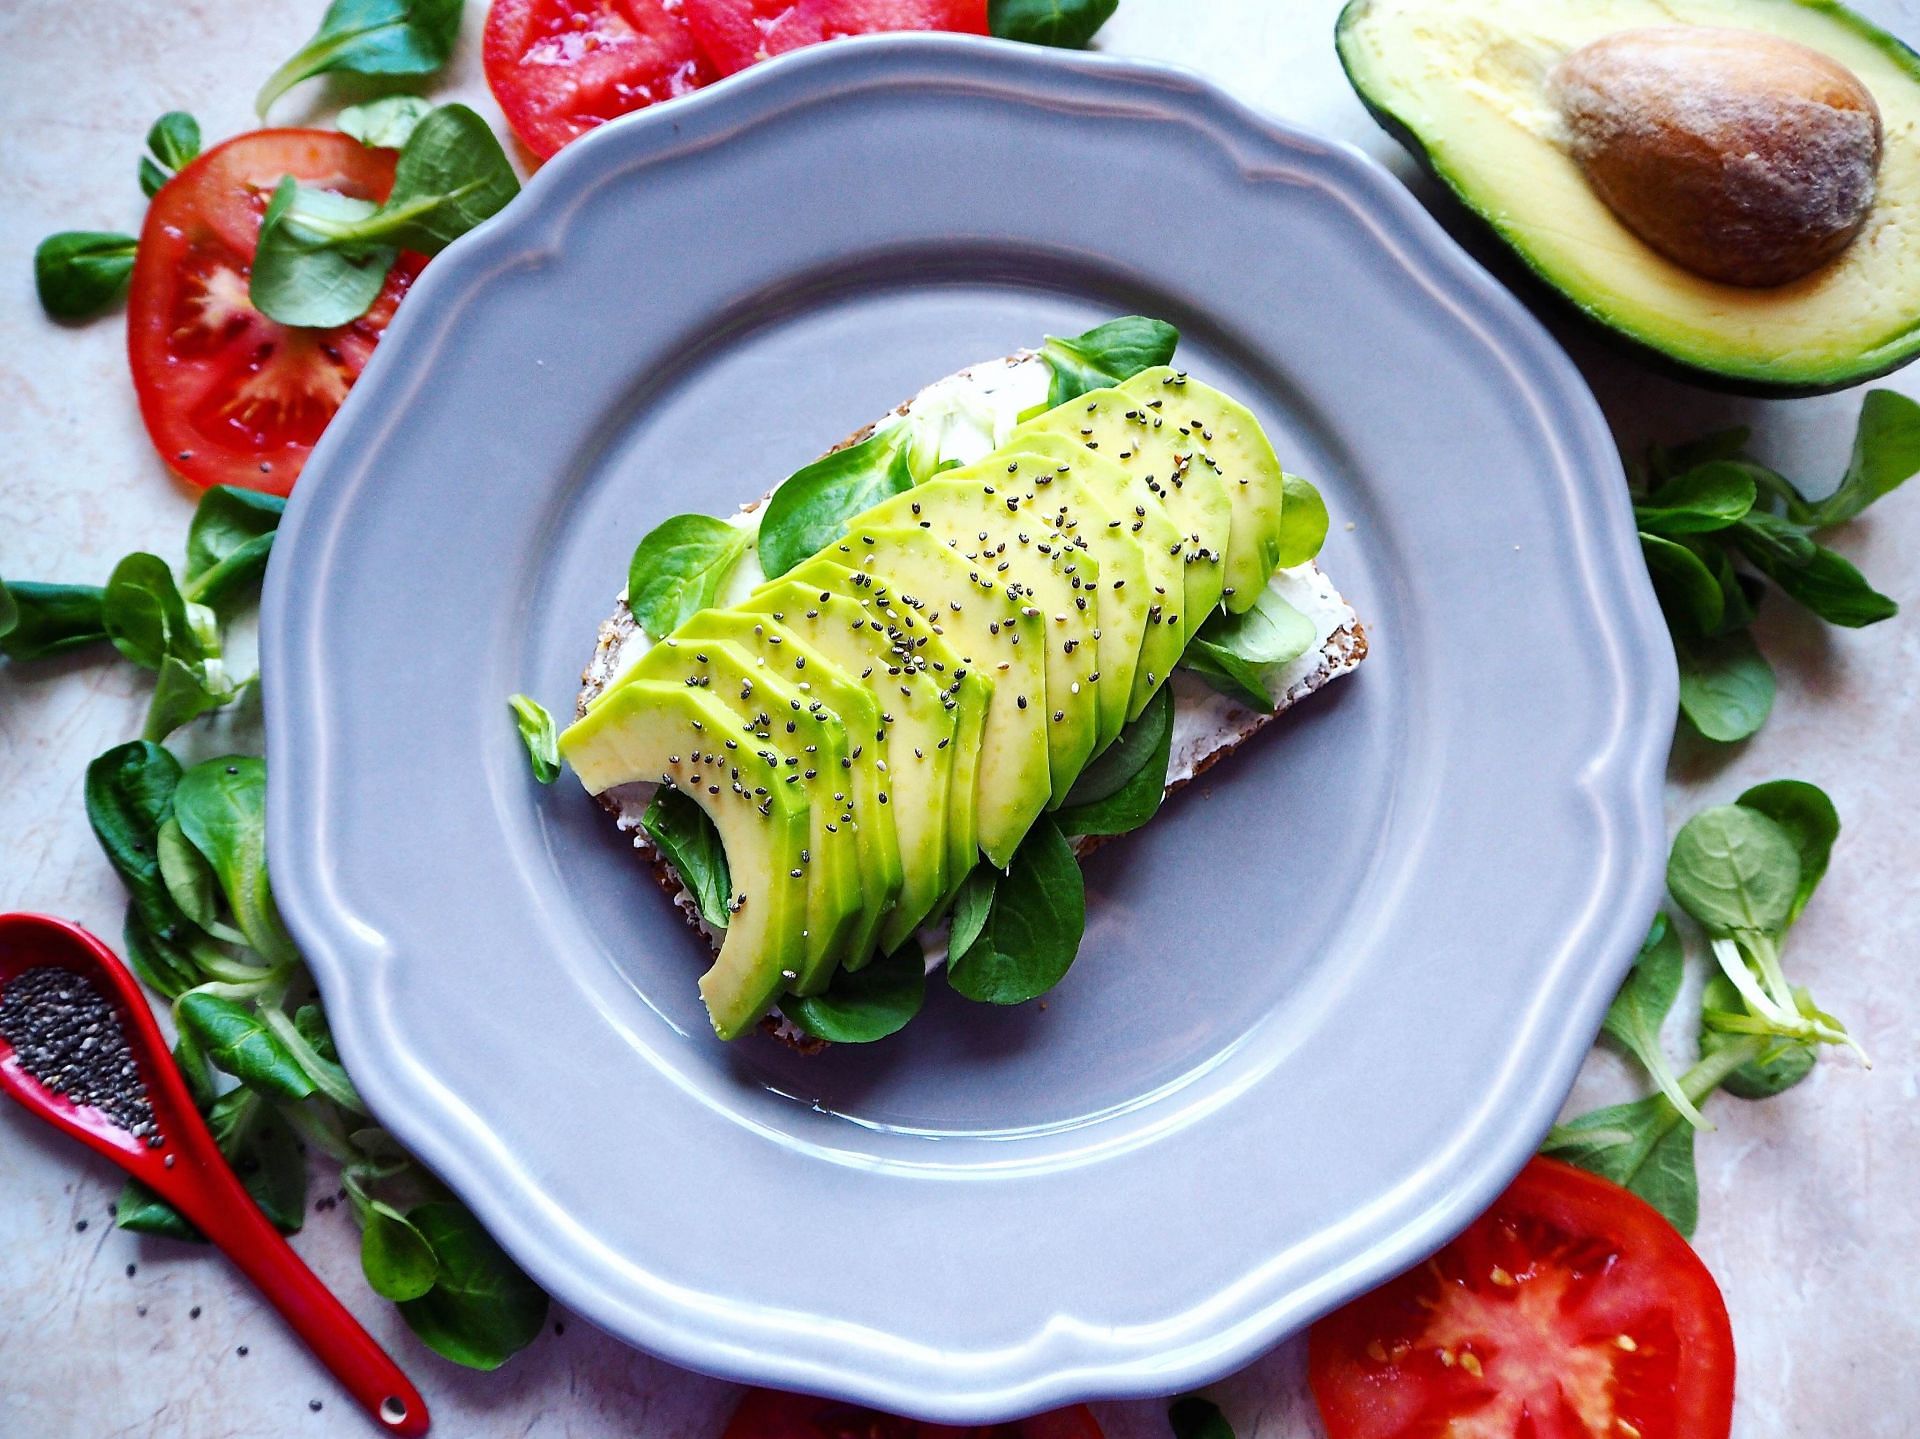 Highly nutritious profile of avocados makes an avocado good for you. (Image via Pexels/ energepic.com)